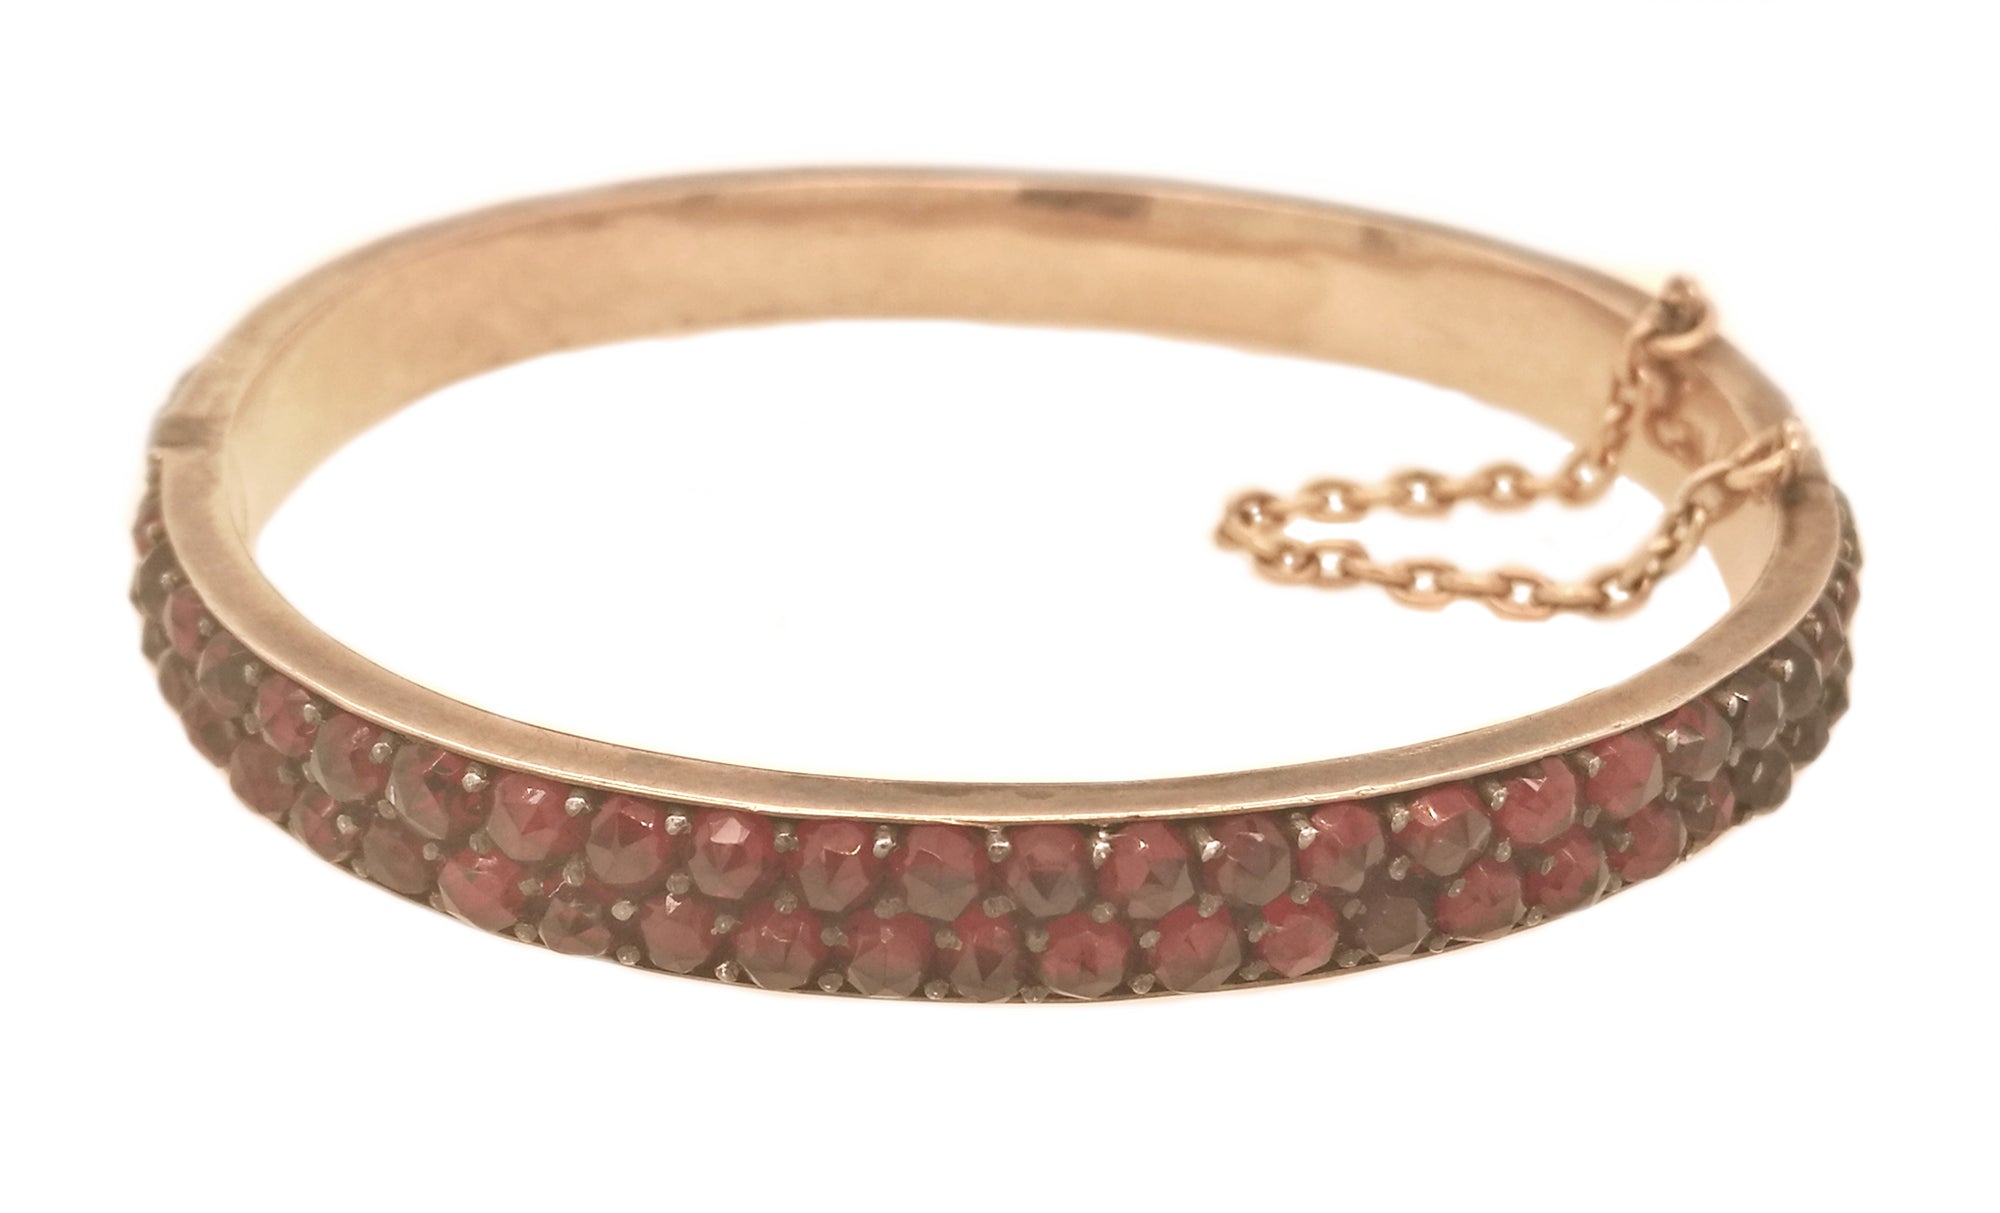 Antique 1890s Bohemian Rose Cut Garnet Bracelet